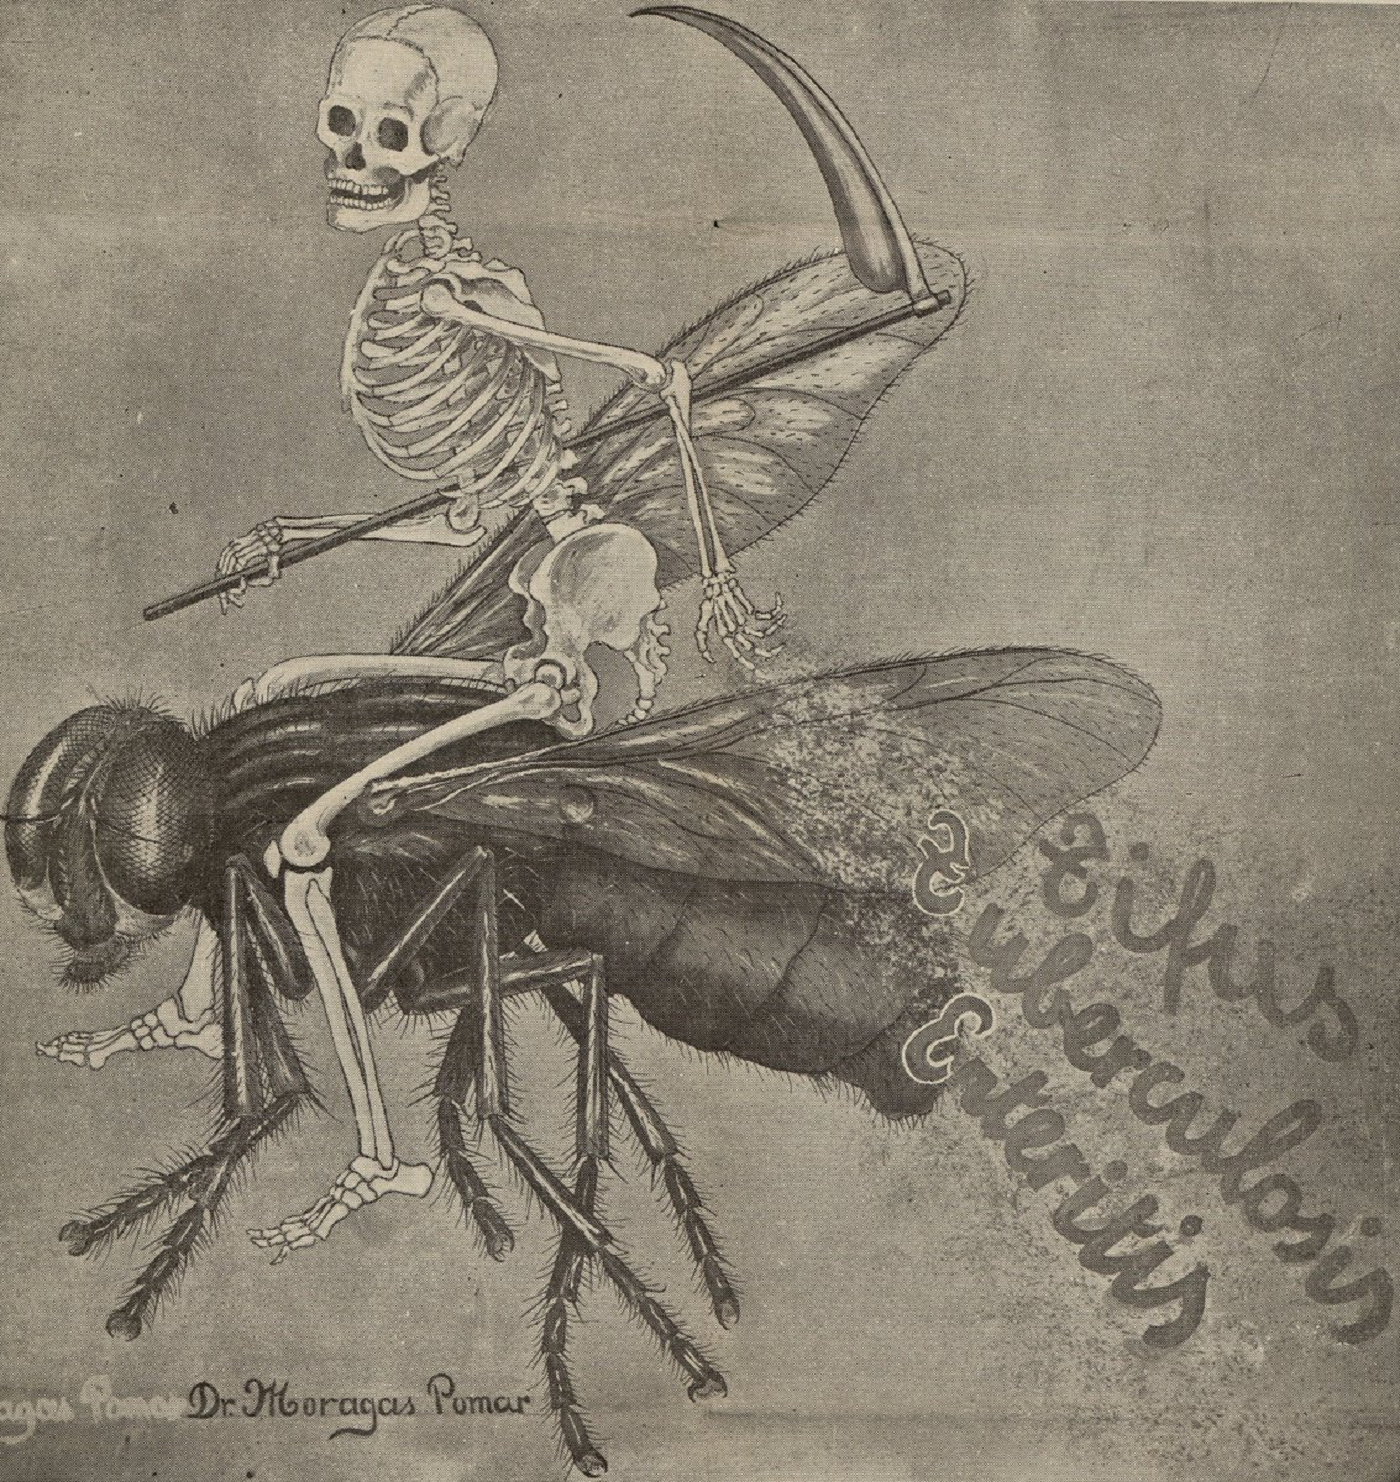 Representació de la mort cavalcant damunt d'un mosquit (circa 1900). Font Arxiu Històric de l'Ajuntament de Barcelona